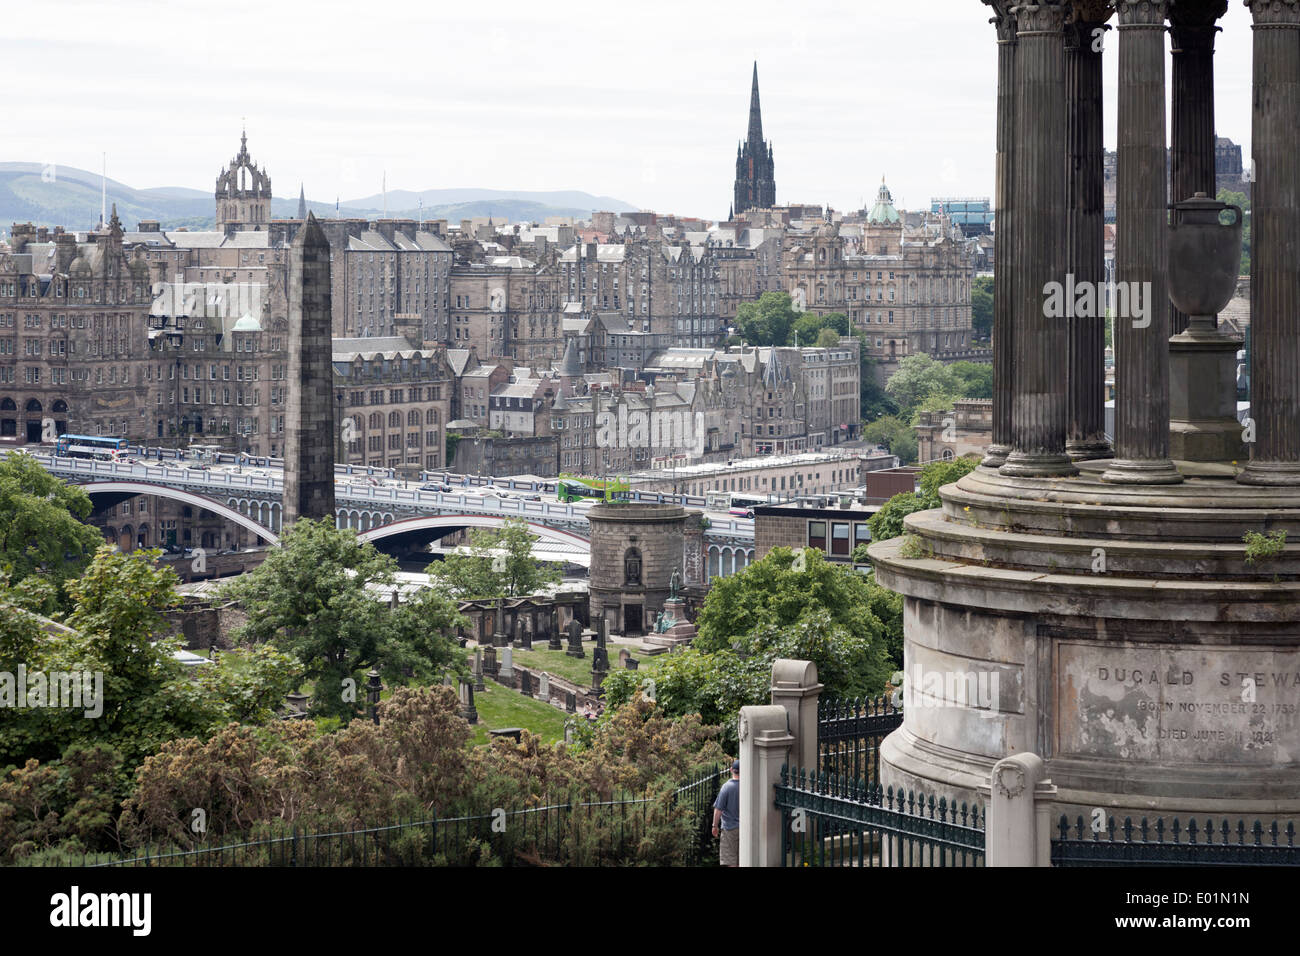 Vista del casco antiguo de Edimburgo incluyendo el North Bridge de Calton Hill. Dugald Stewart Monumento en primer plano a la derecha. Foto de stock